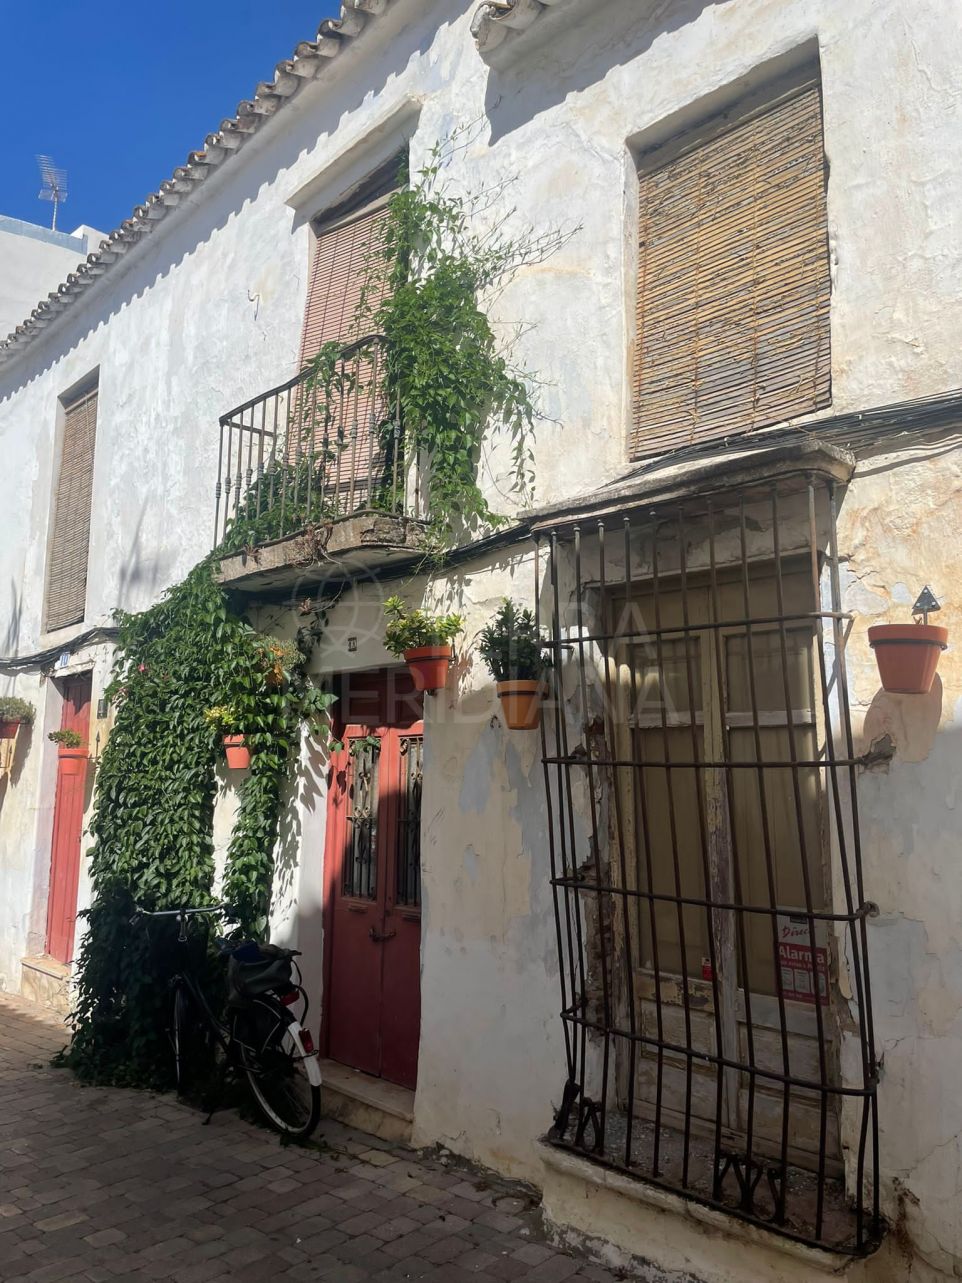 Opportunité de Rénovation : Maison de Village Historique avec Caractéristiques Originales à Vendre dans la Vieille Ville d'Estepona